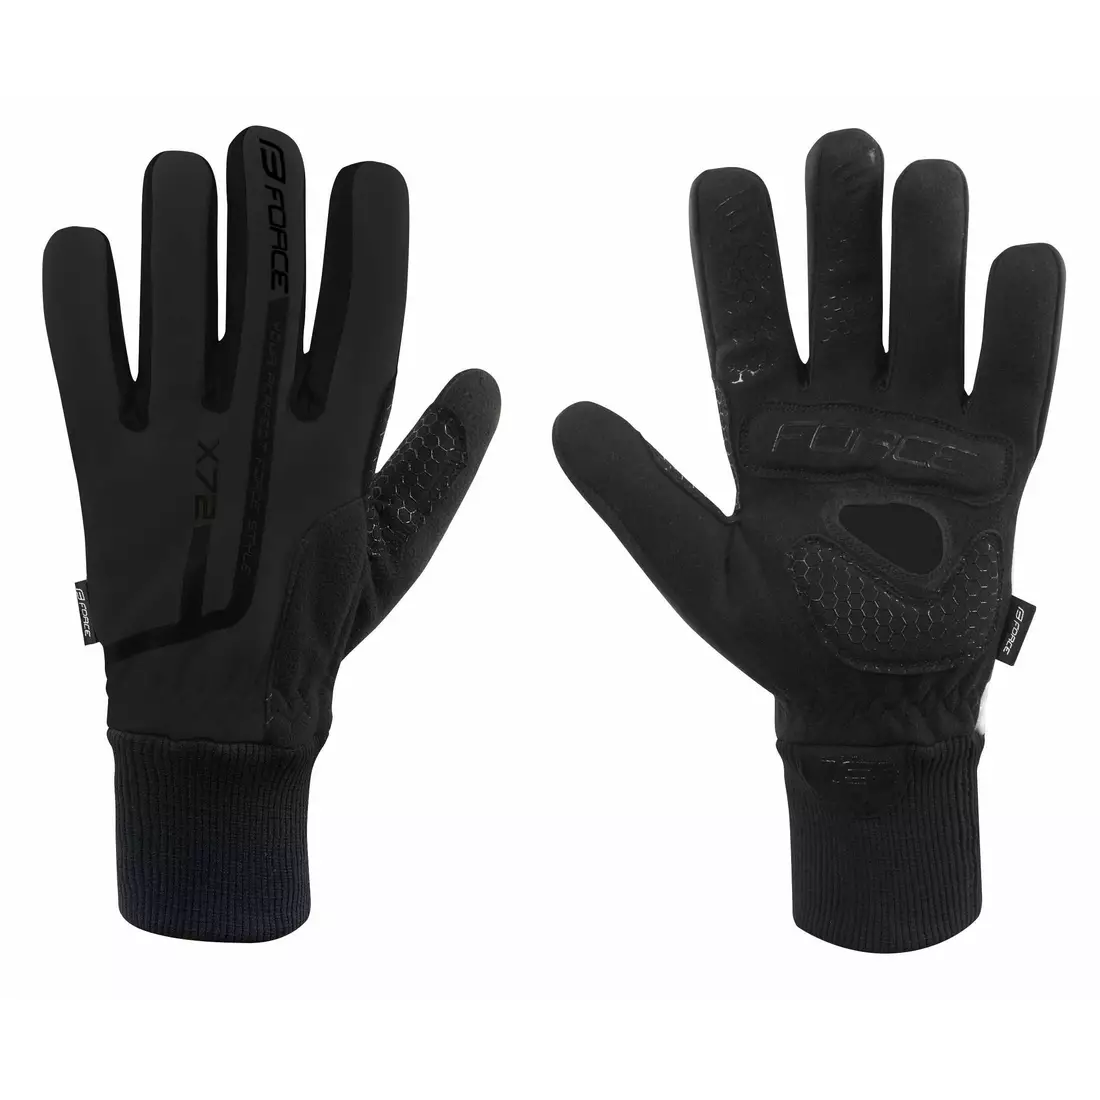 FORCE X72 zimné cyklistické rukavice, čierne 90461